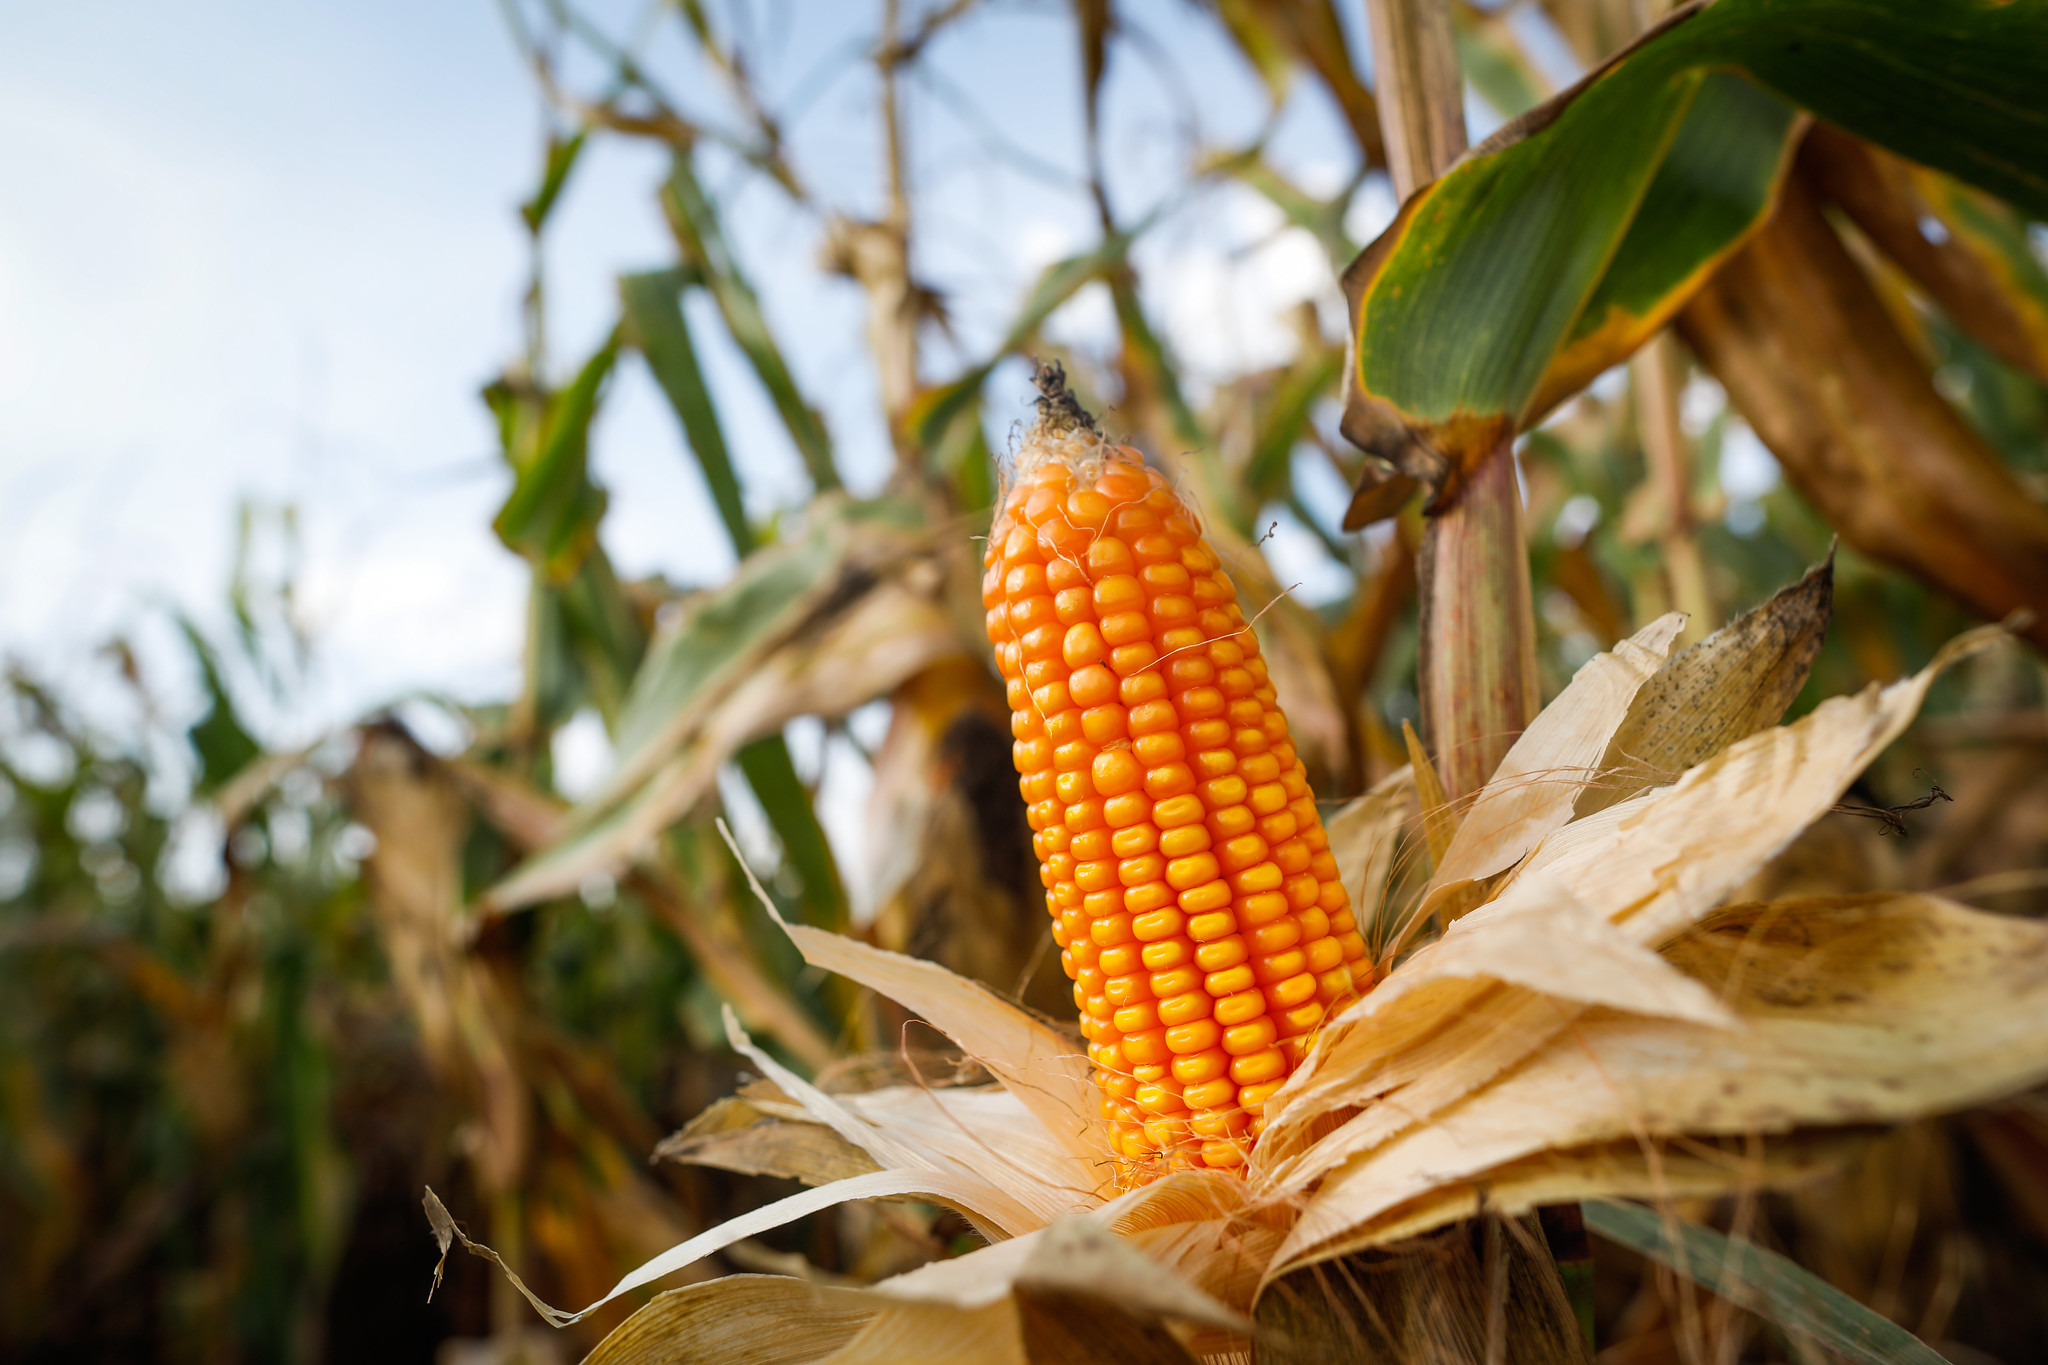 Geada pode impactar a produção de milho e feijão segunda safra no centro-sul do país